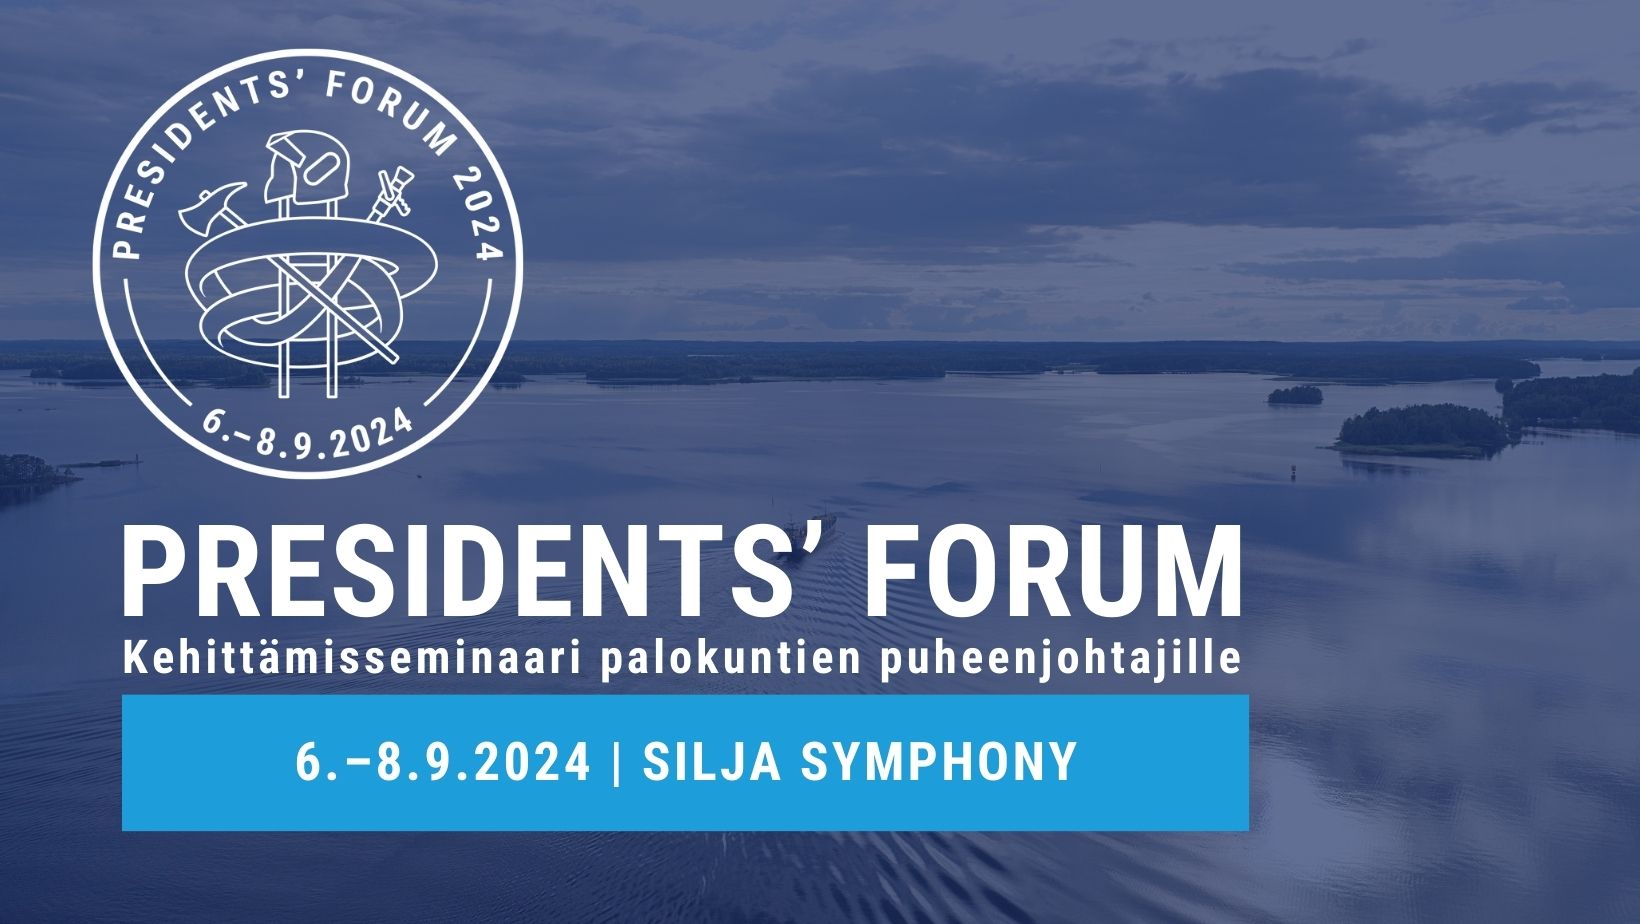 Sumea sininen tausta, jossa merellinen maisema, President's Forum -logo ja teksti President's Forum kehittämisseminaari palokuntien puheenjohtajille 6.–8.9.2024 Silja Symphony